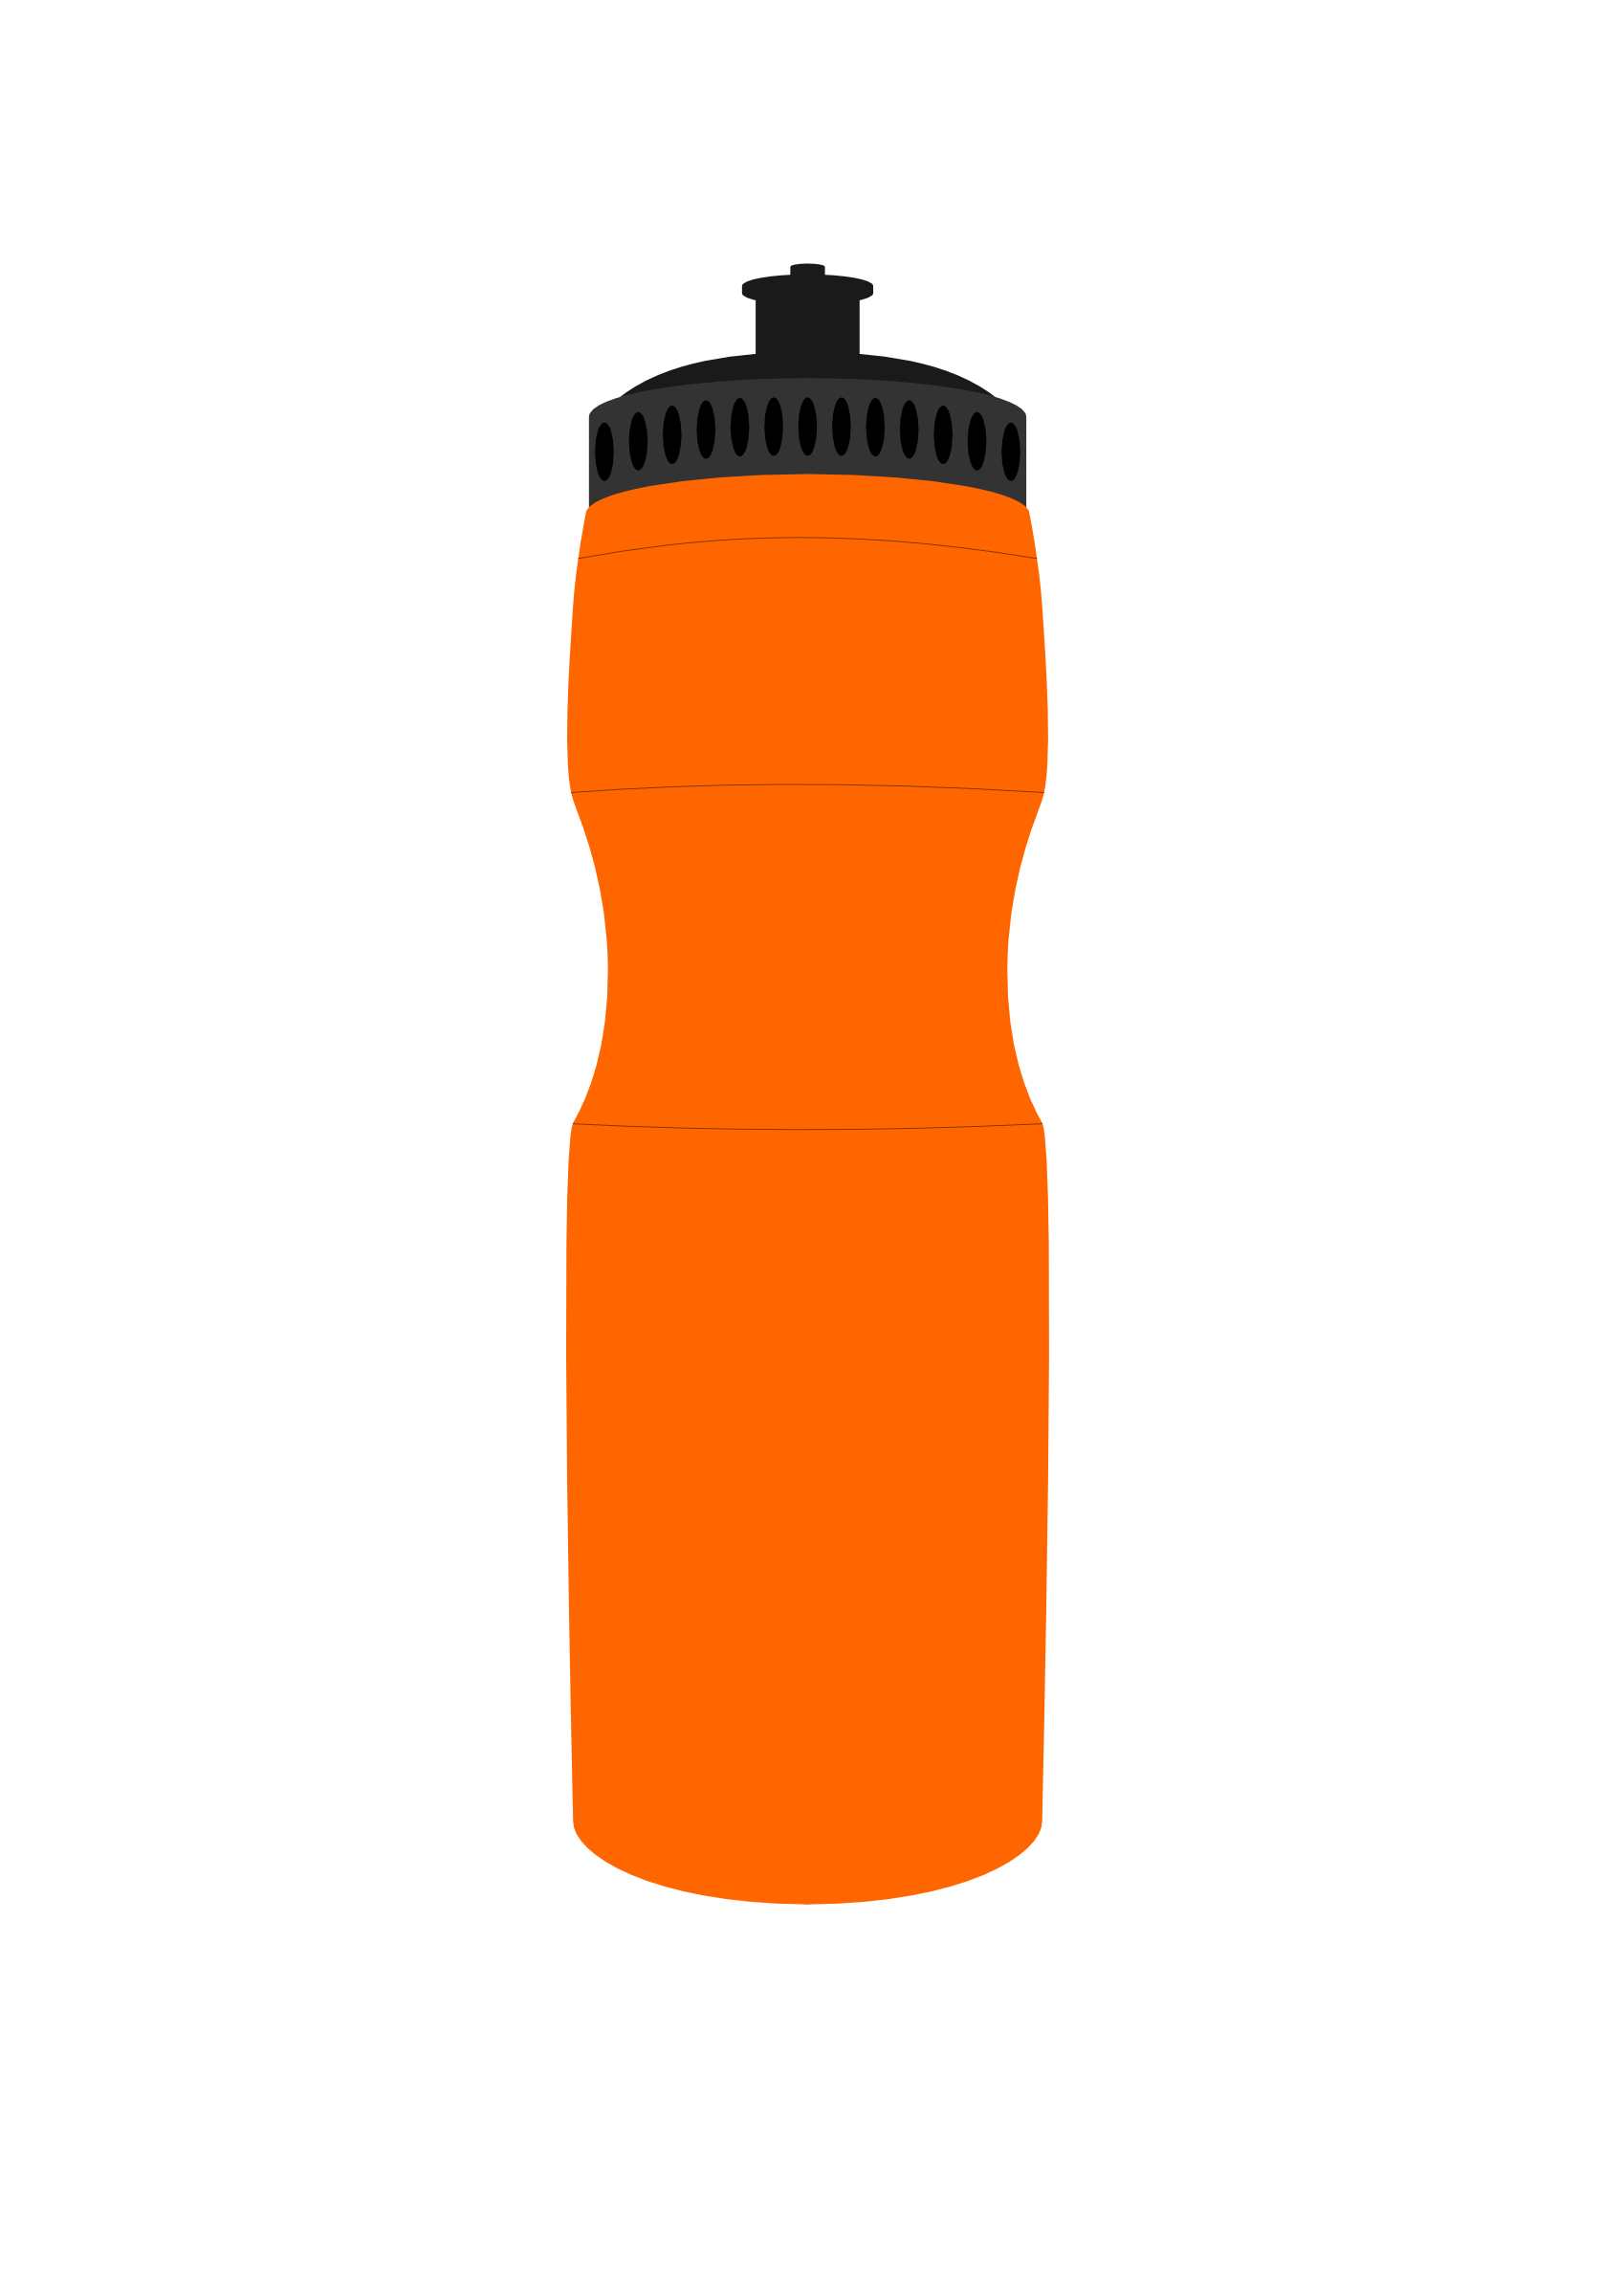 water bottle clipart - Clip Art Water Bottle